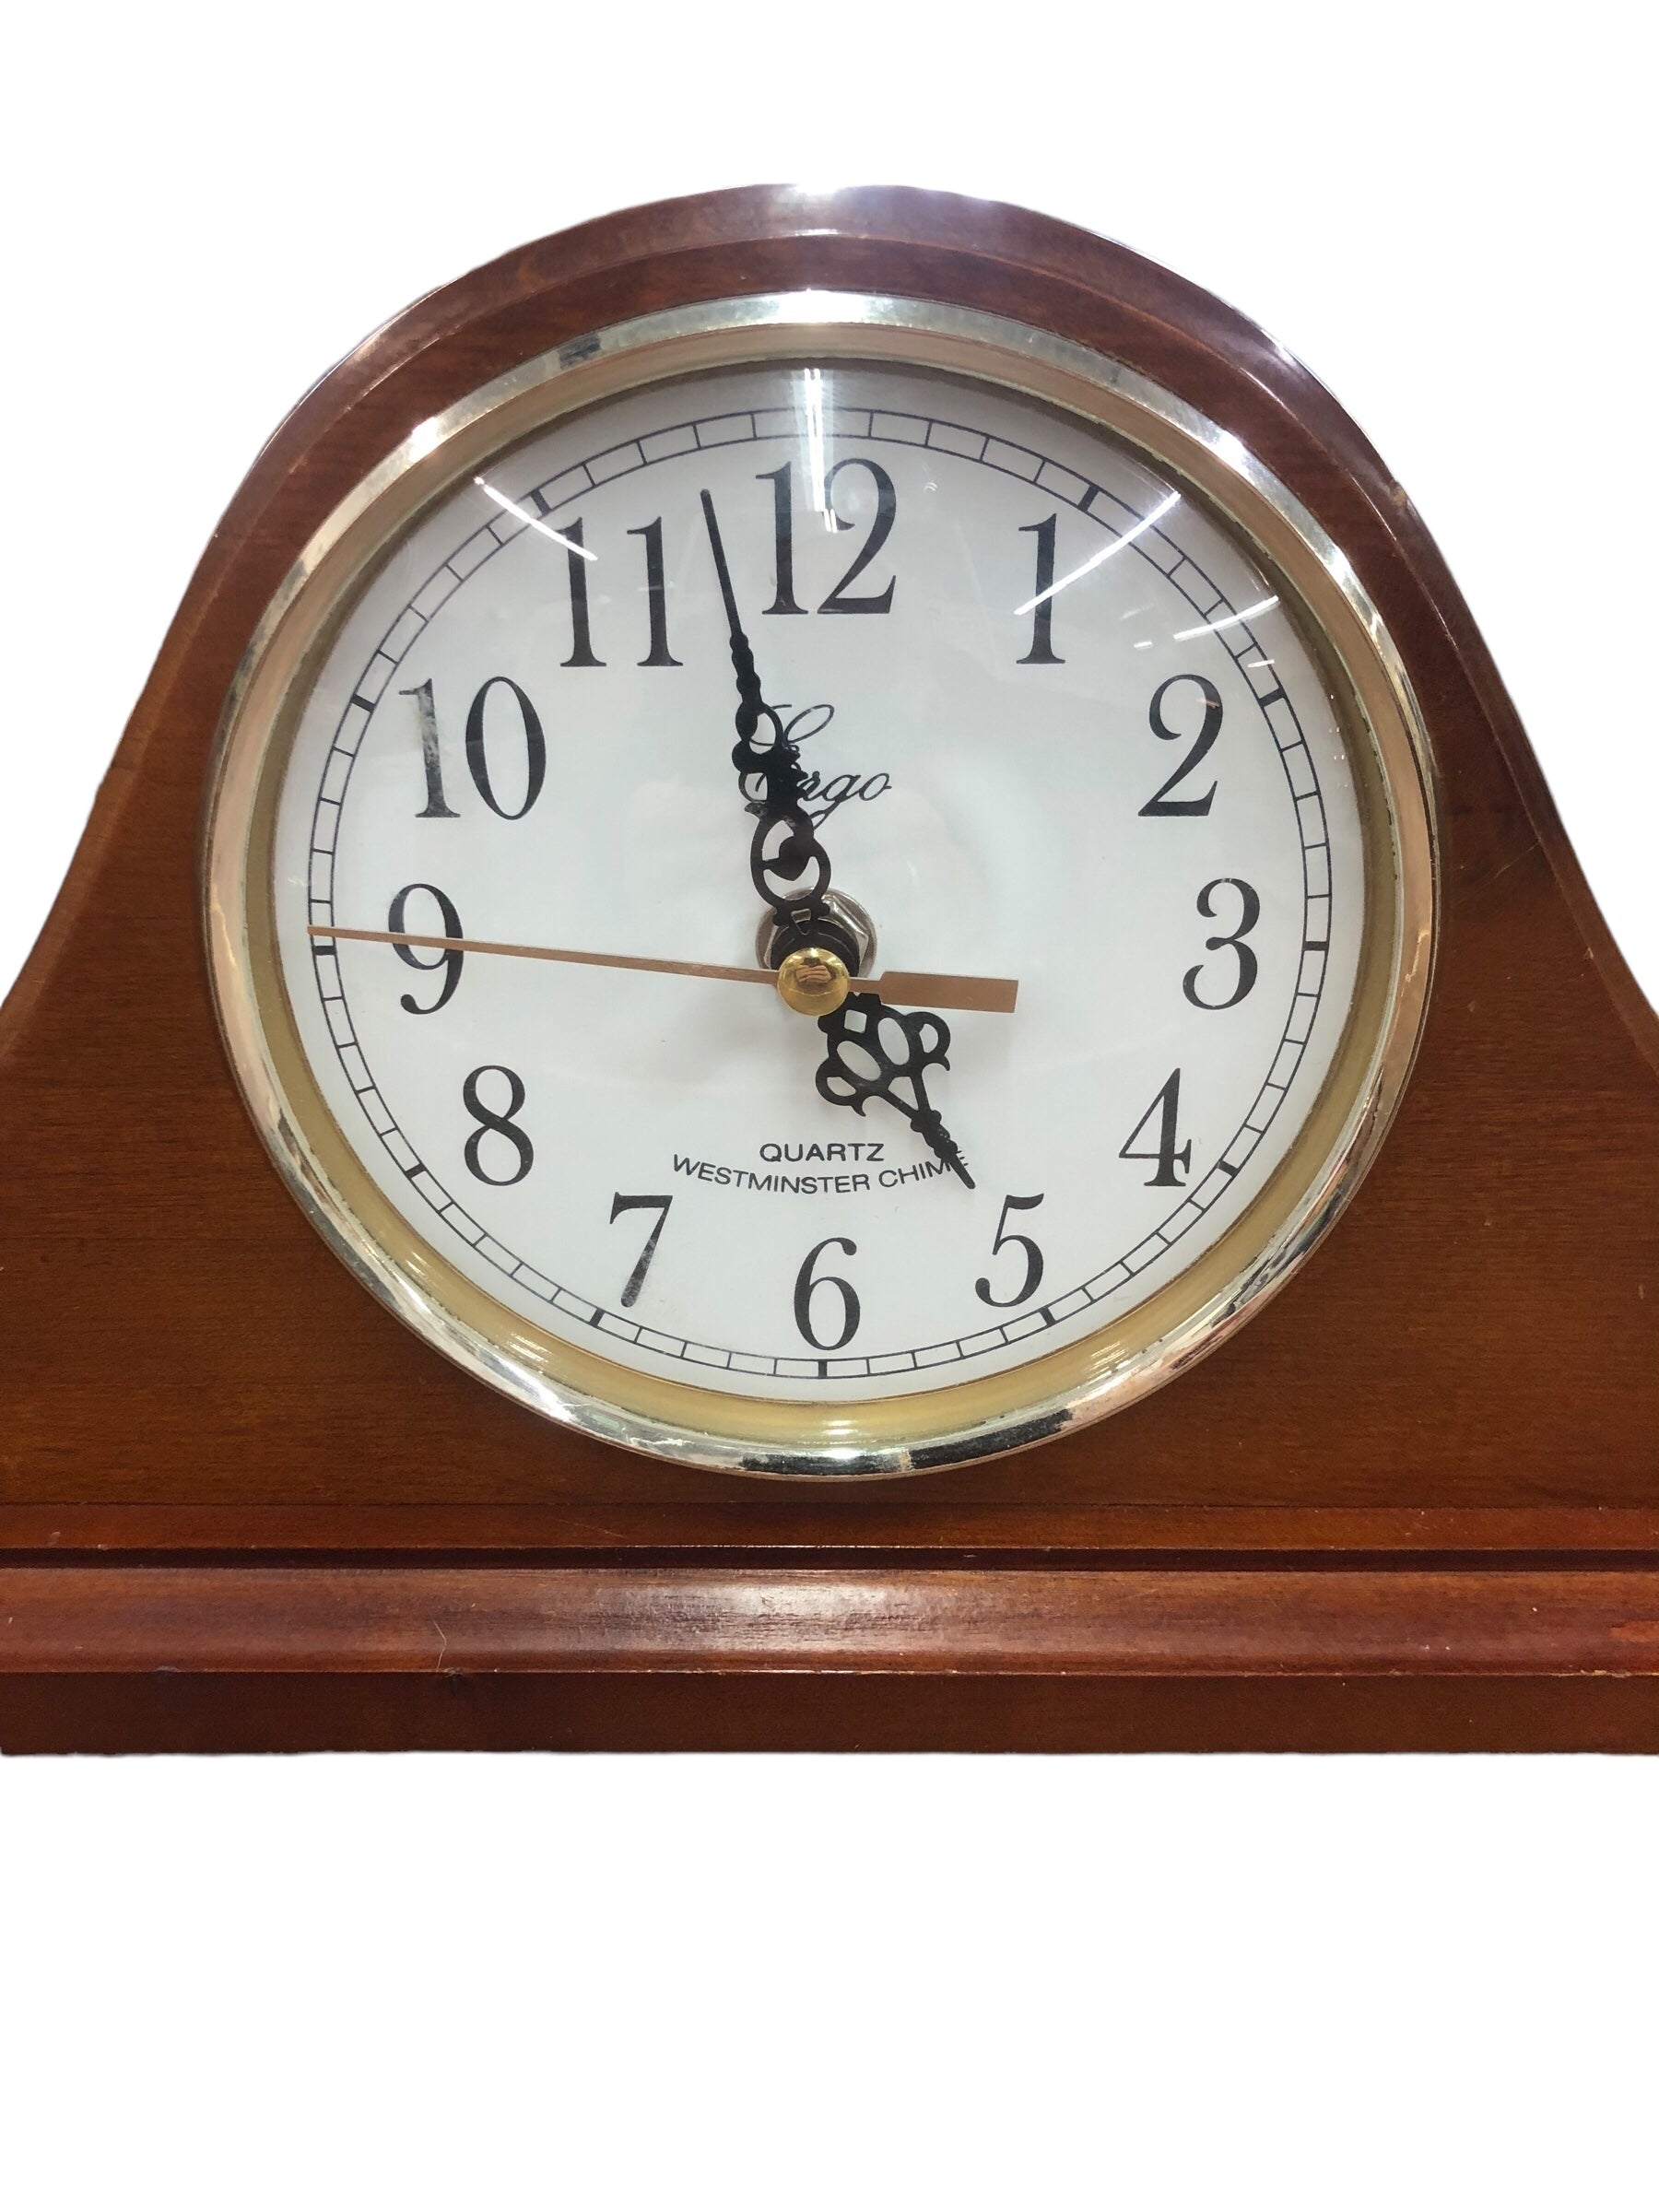 Ergo Mantle Clock